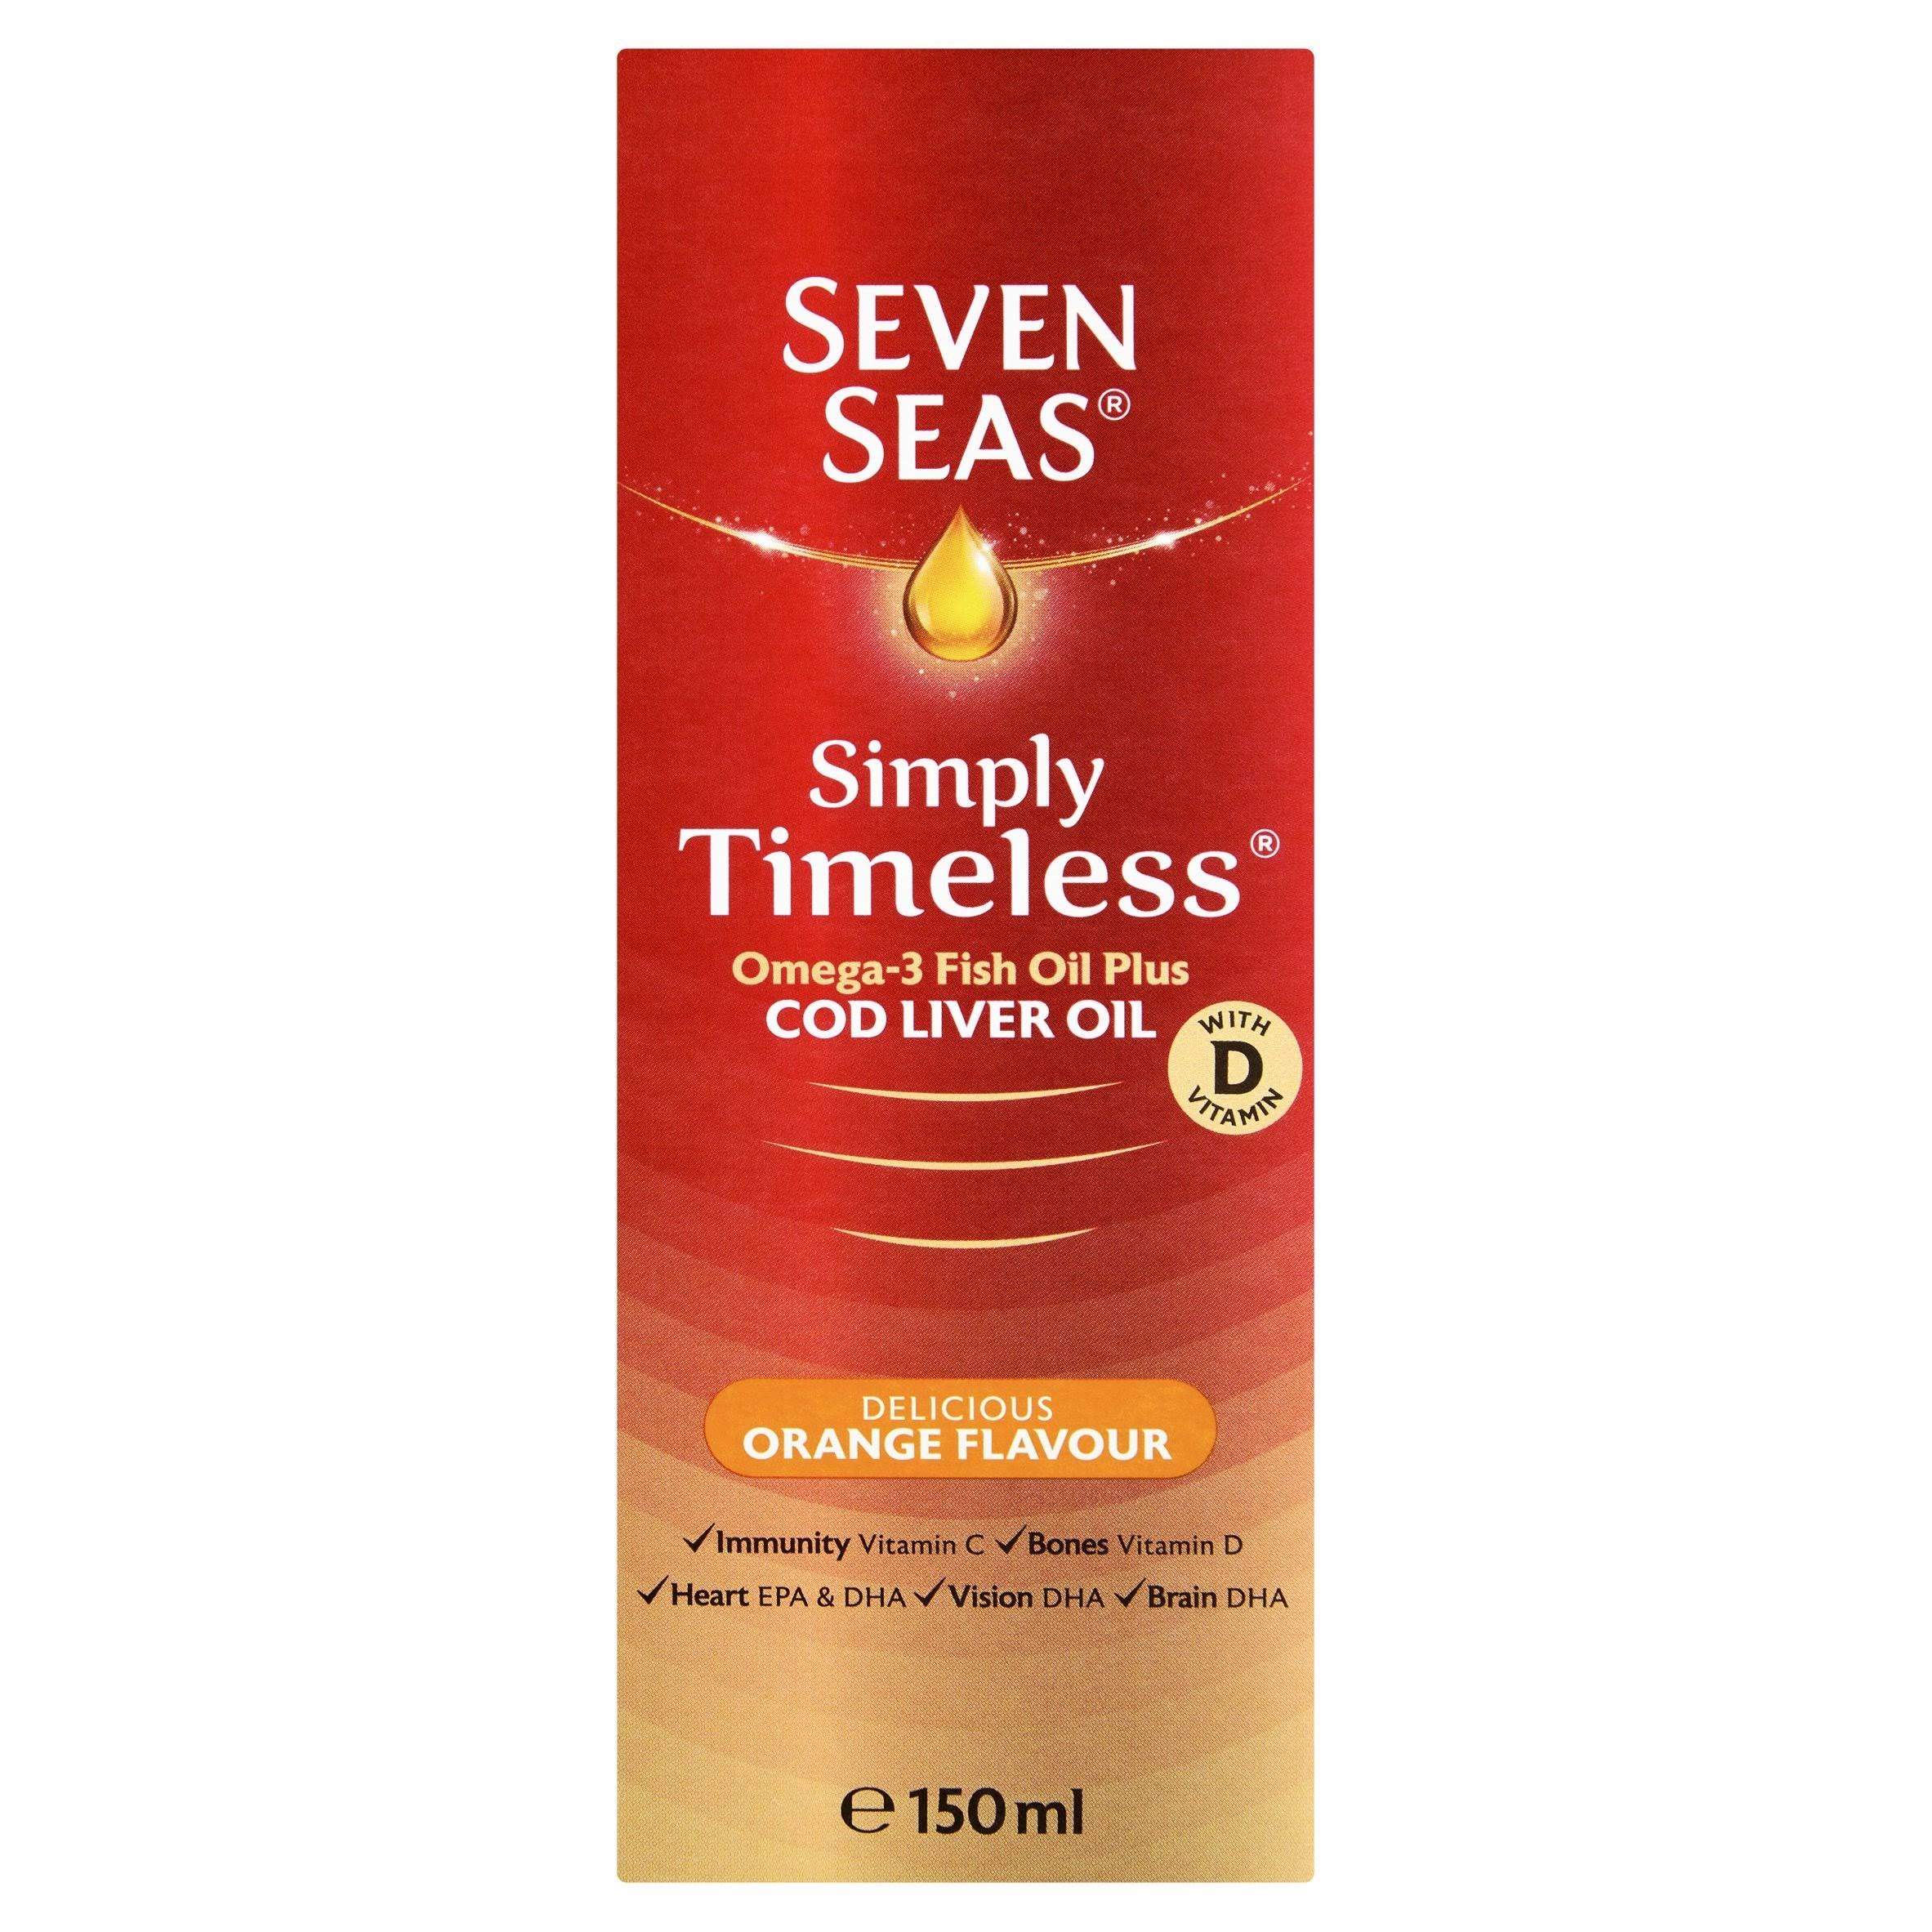 Seven Seas Omega-3 Fish Oil+ Cod Liver Oil - Orange Flavour, 150ml